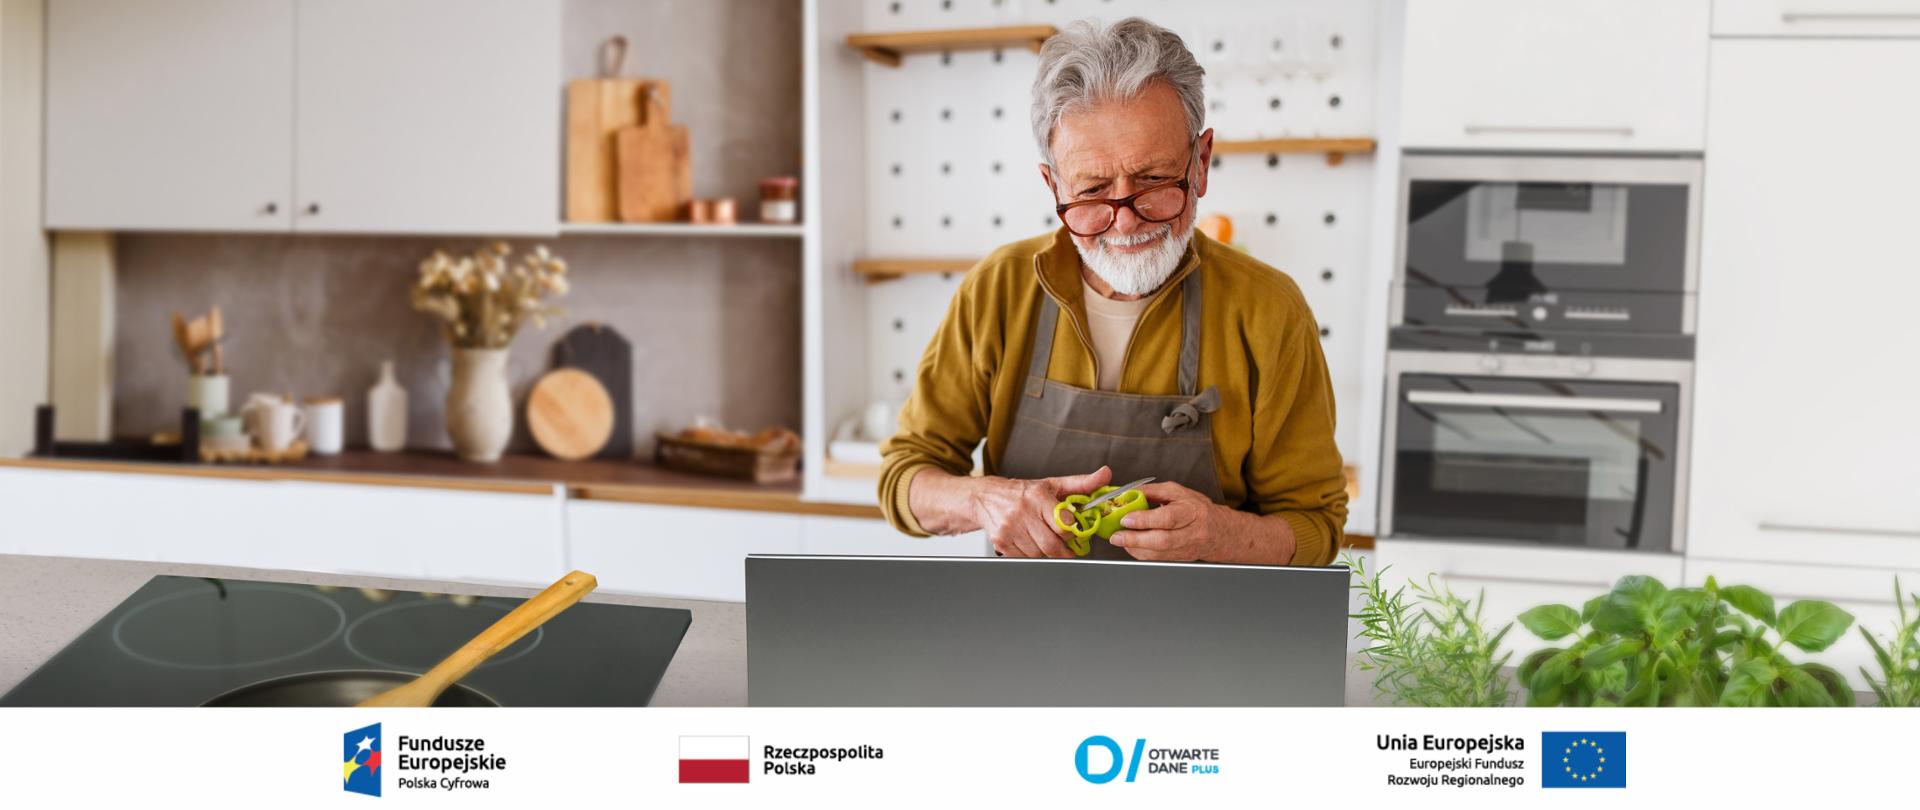 Starszy mężczyzna w kuchni - ubrany w fartuch, kroi paprykę, przed nim stoi laptop (najprawdopodobniej z przepisem na przygotowywaną potrawę).